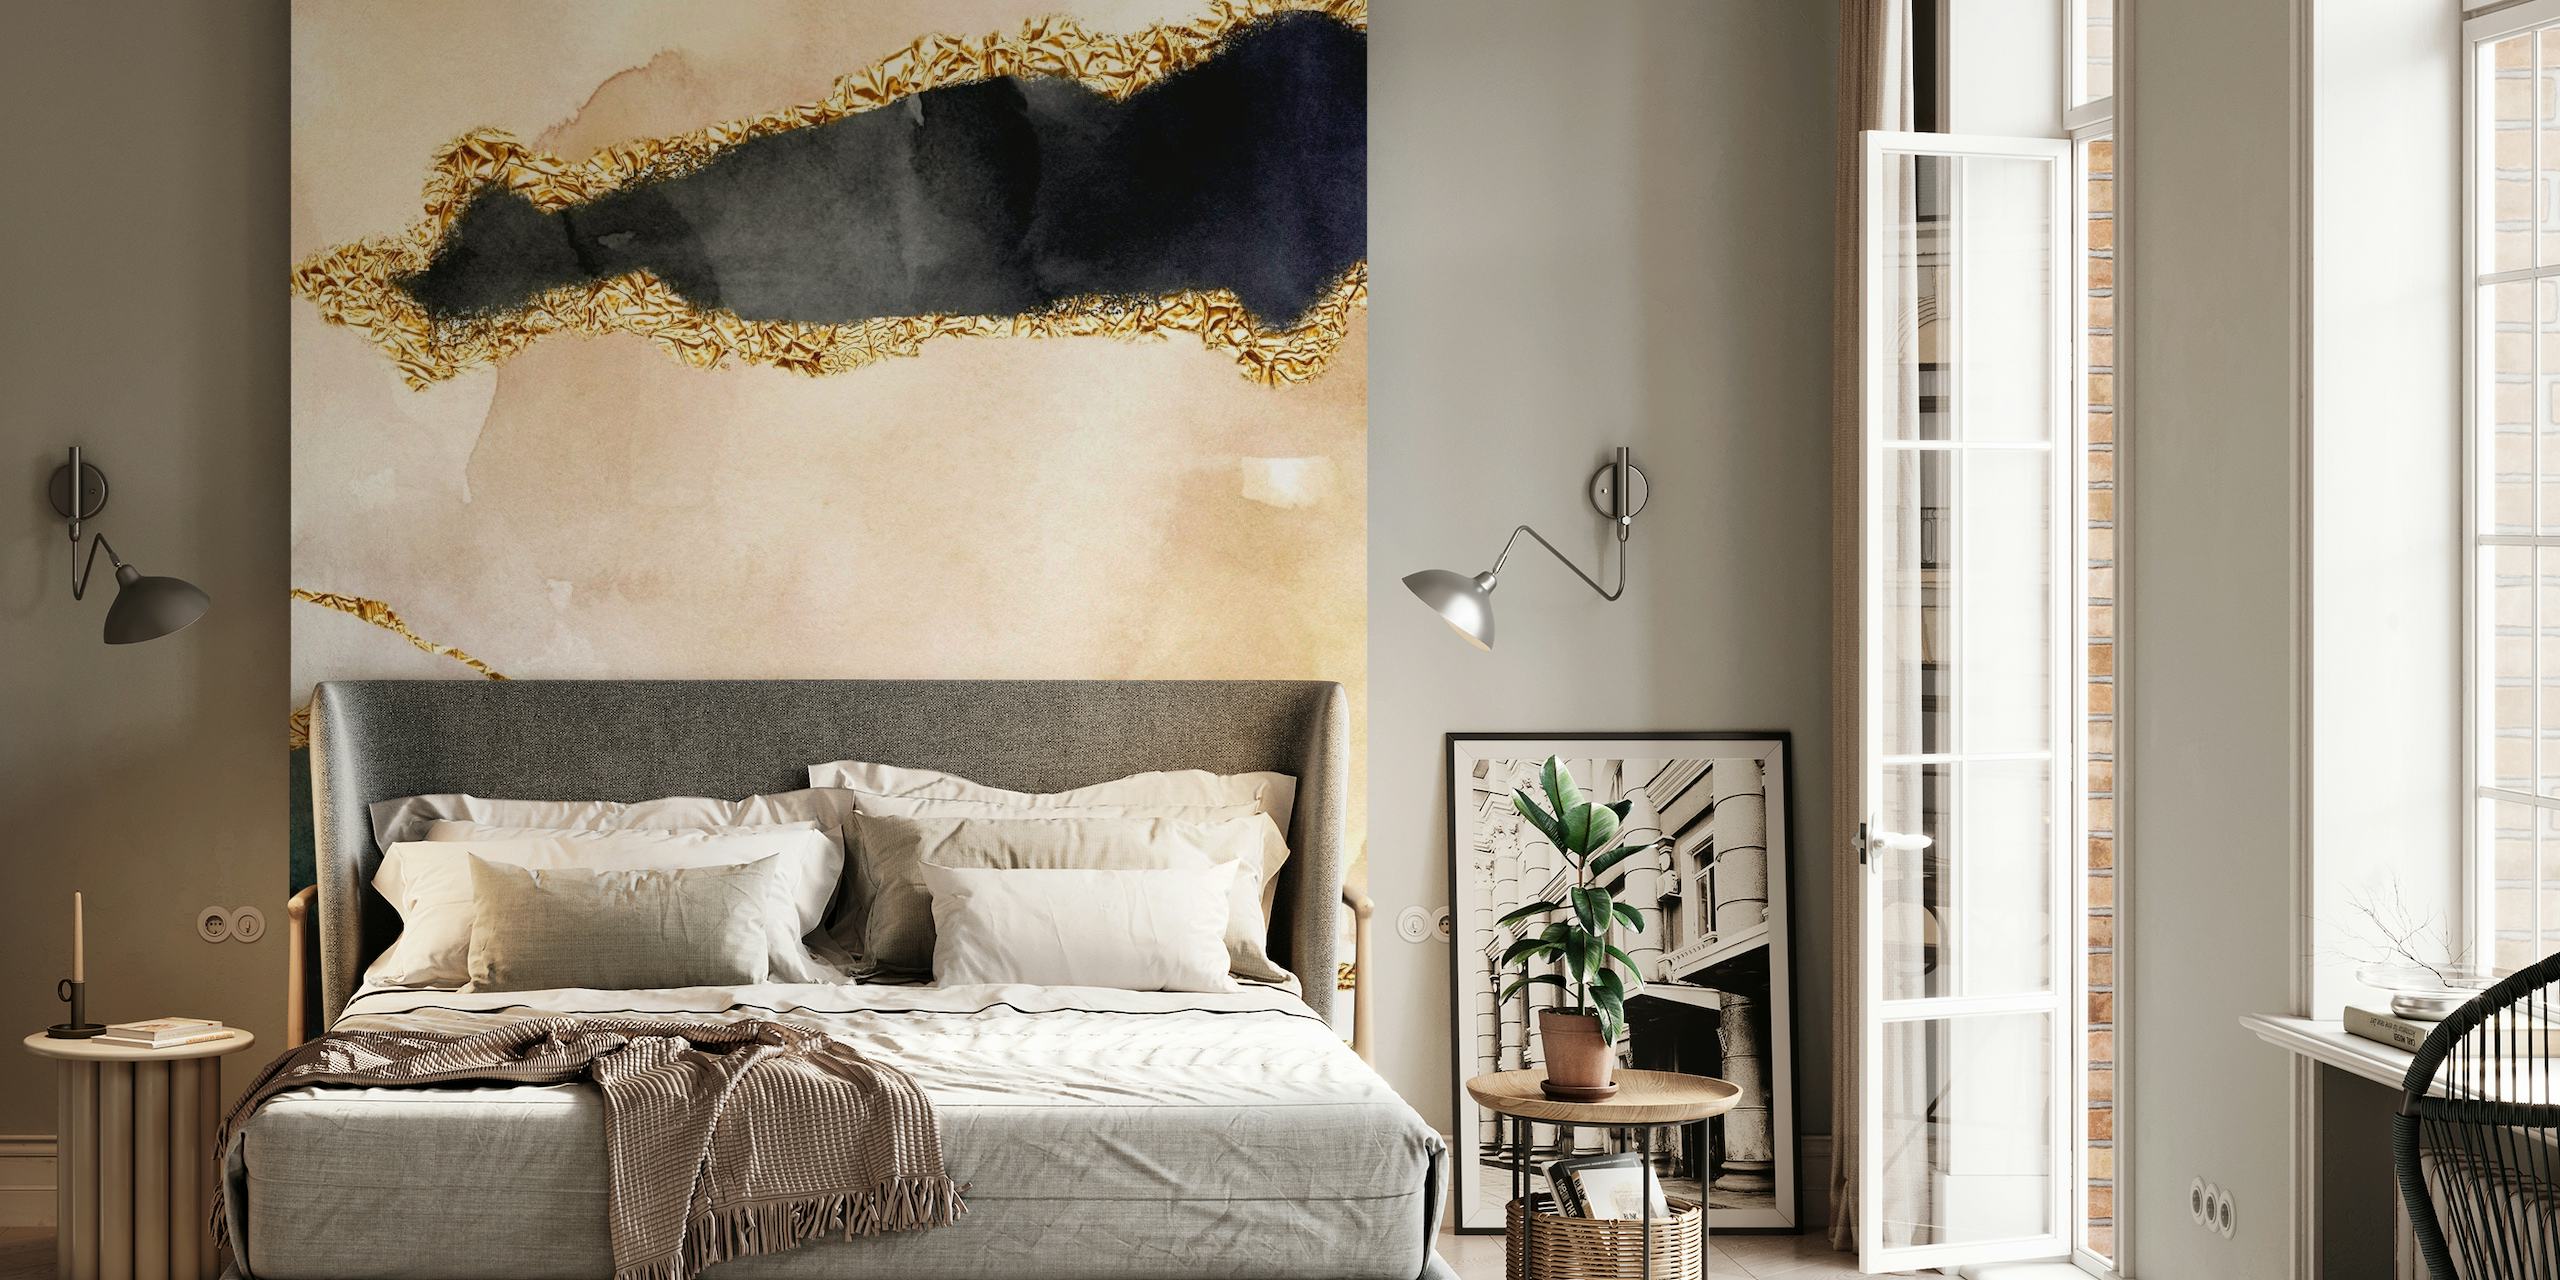 Abstract landschapsfotobehang met marineblauwe, gouden en crèmekleurige aquareltexturen